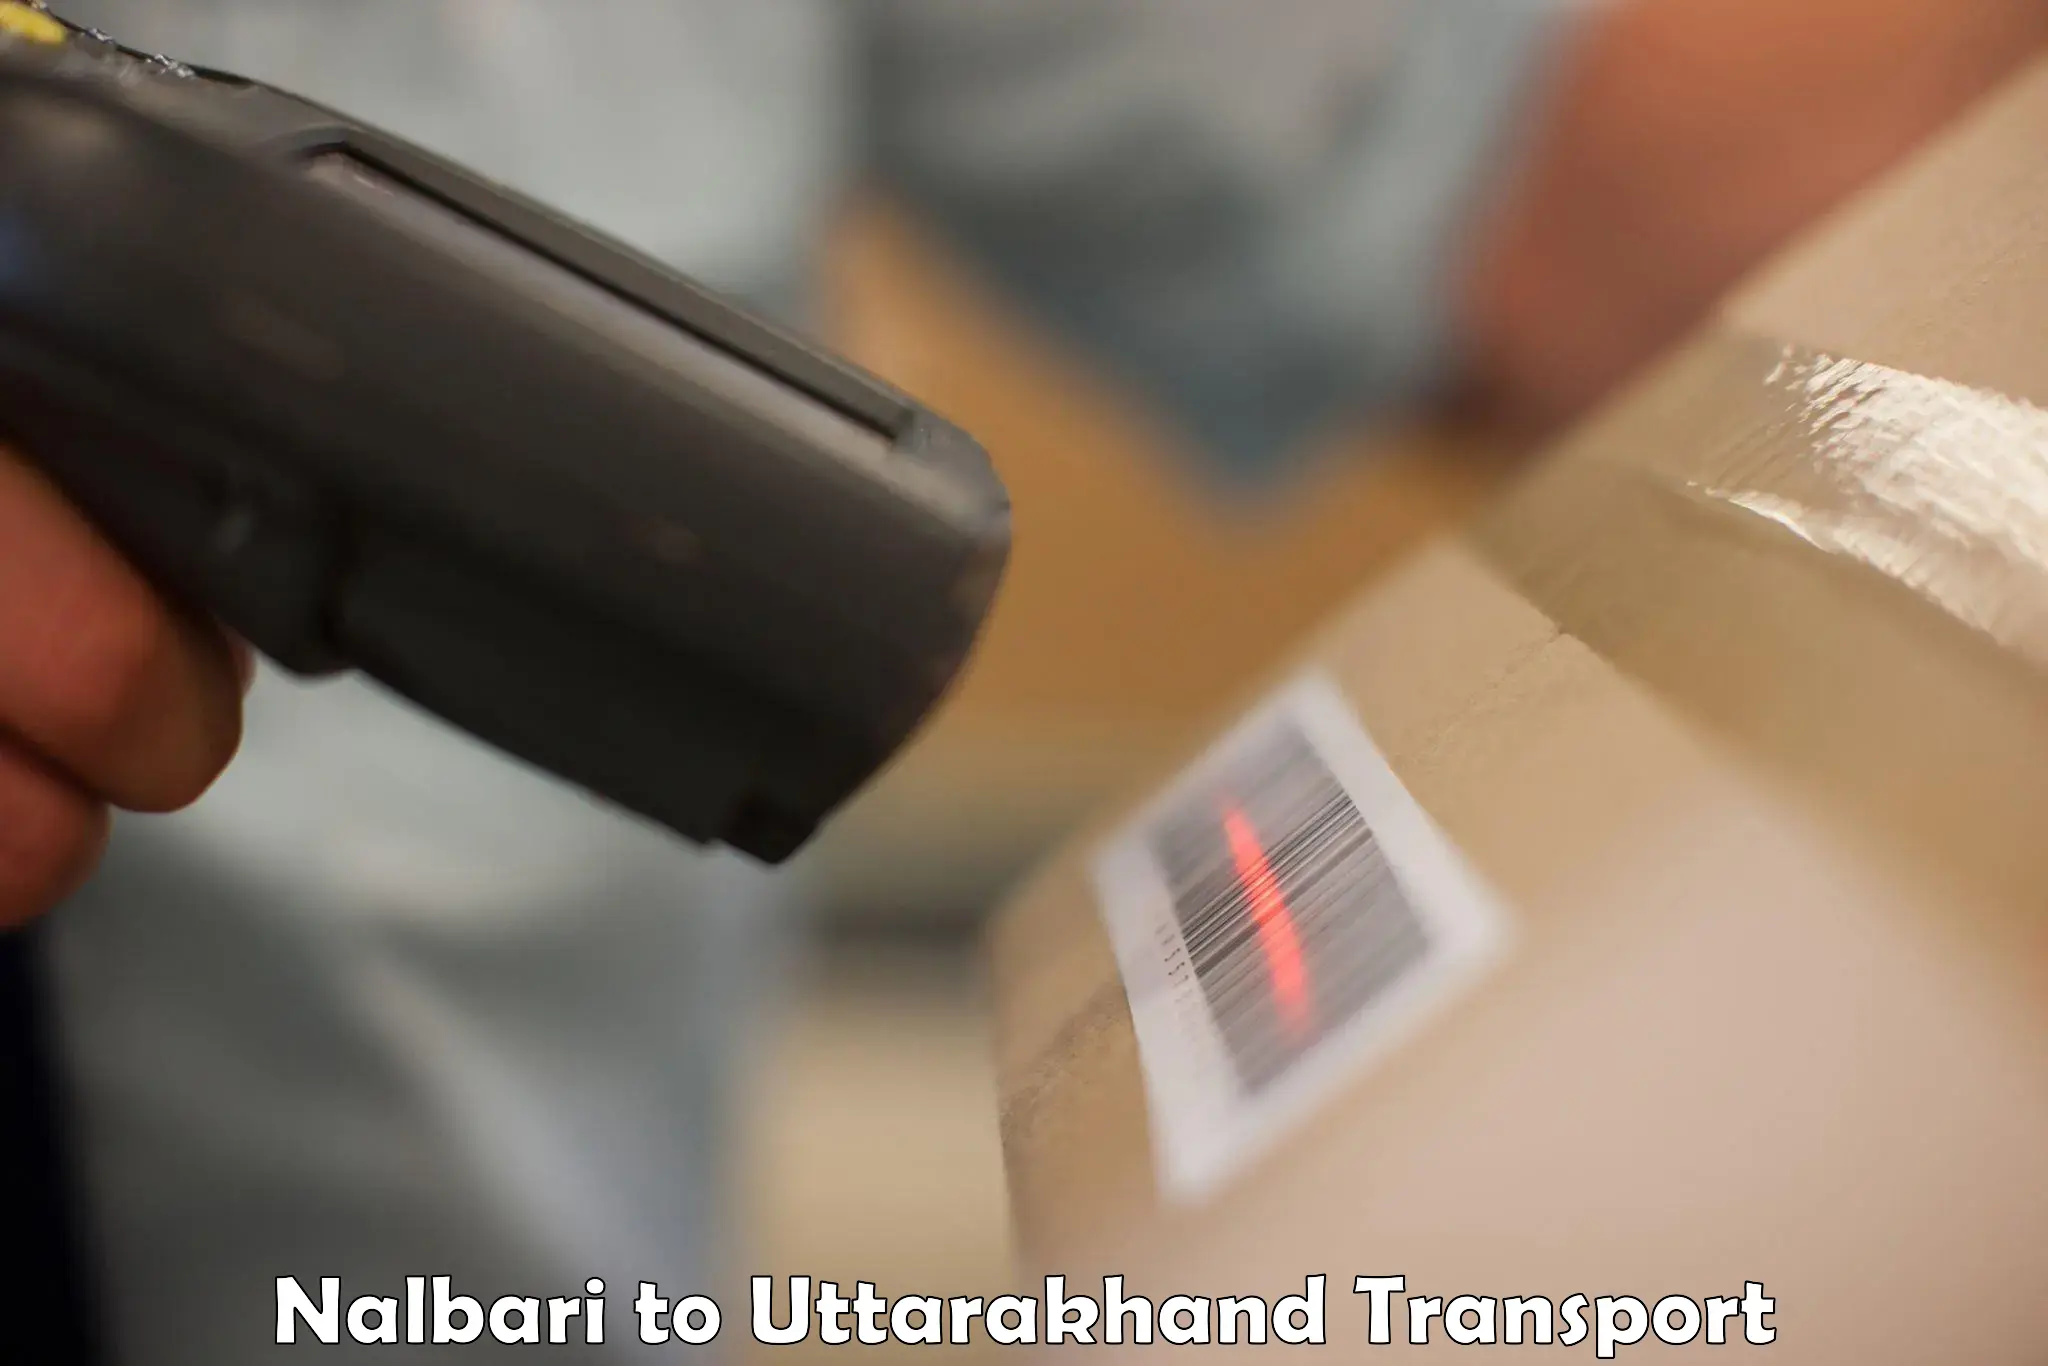 Road transport online services Nalbari to Uttarakhand